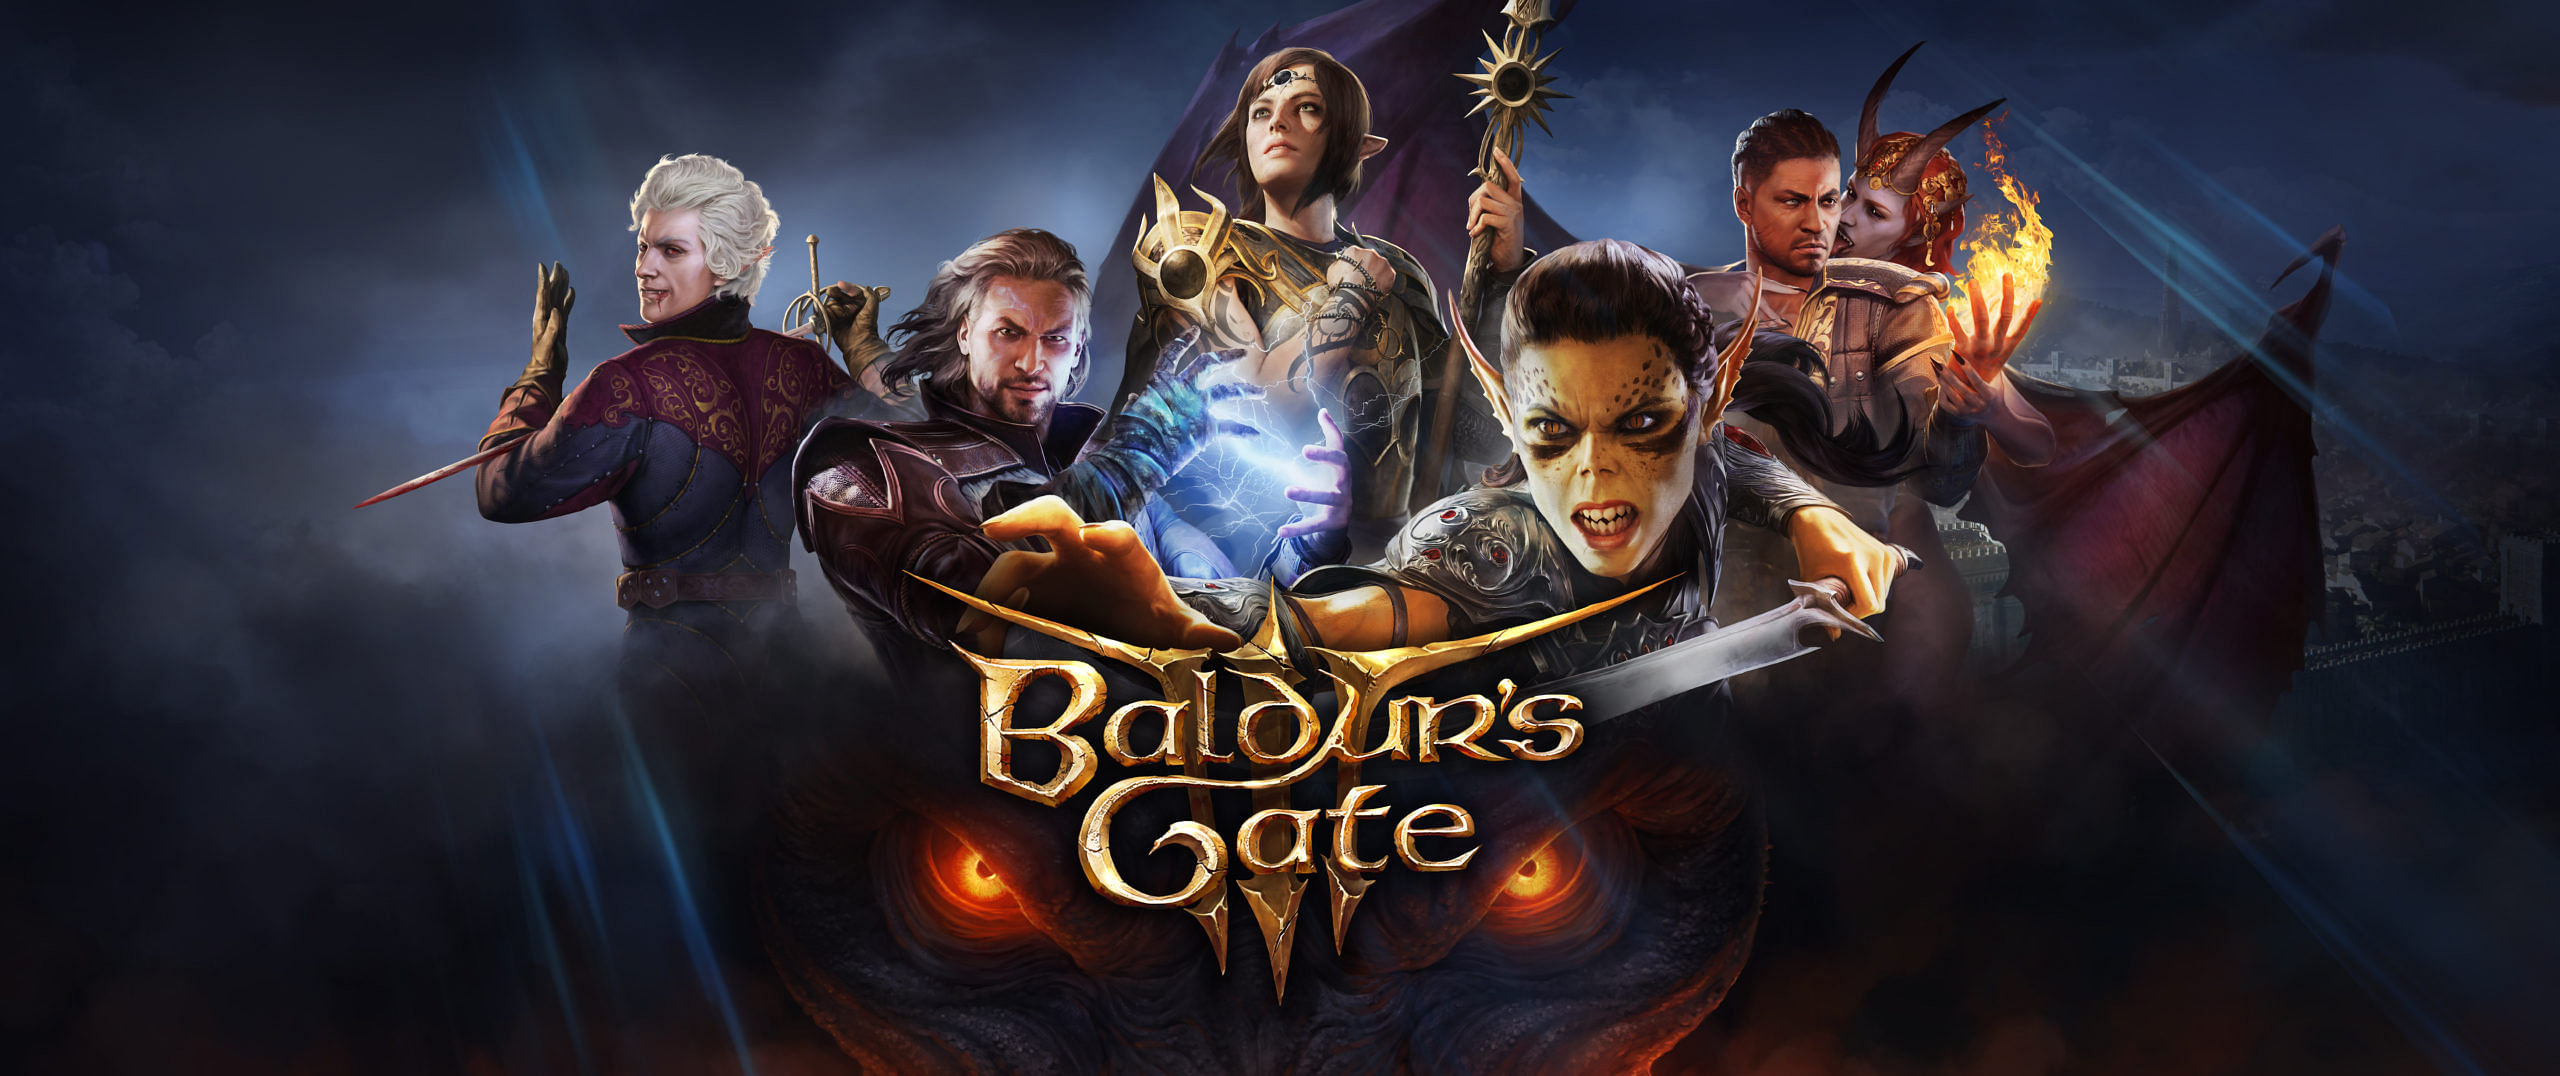 Baldur's Gate 3 Crossplay and Crossplatform explained - Sportskeeda Stories